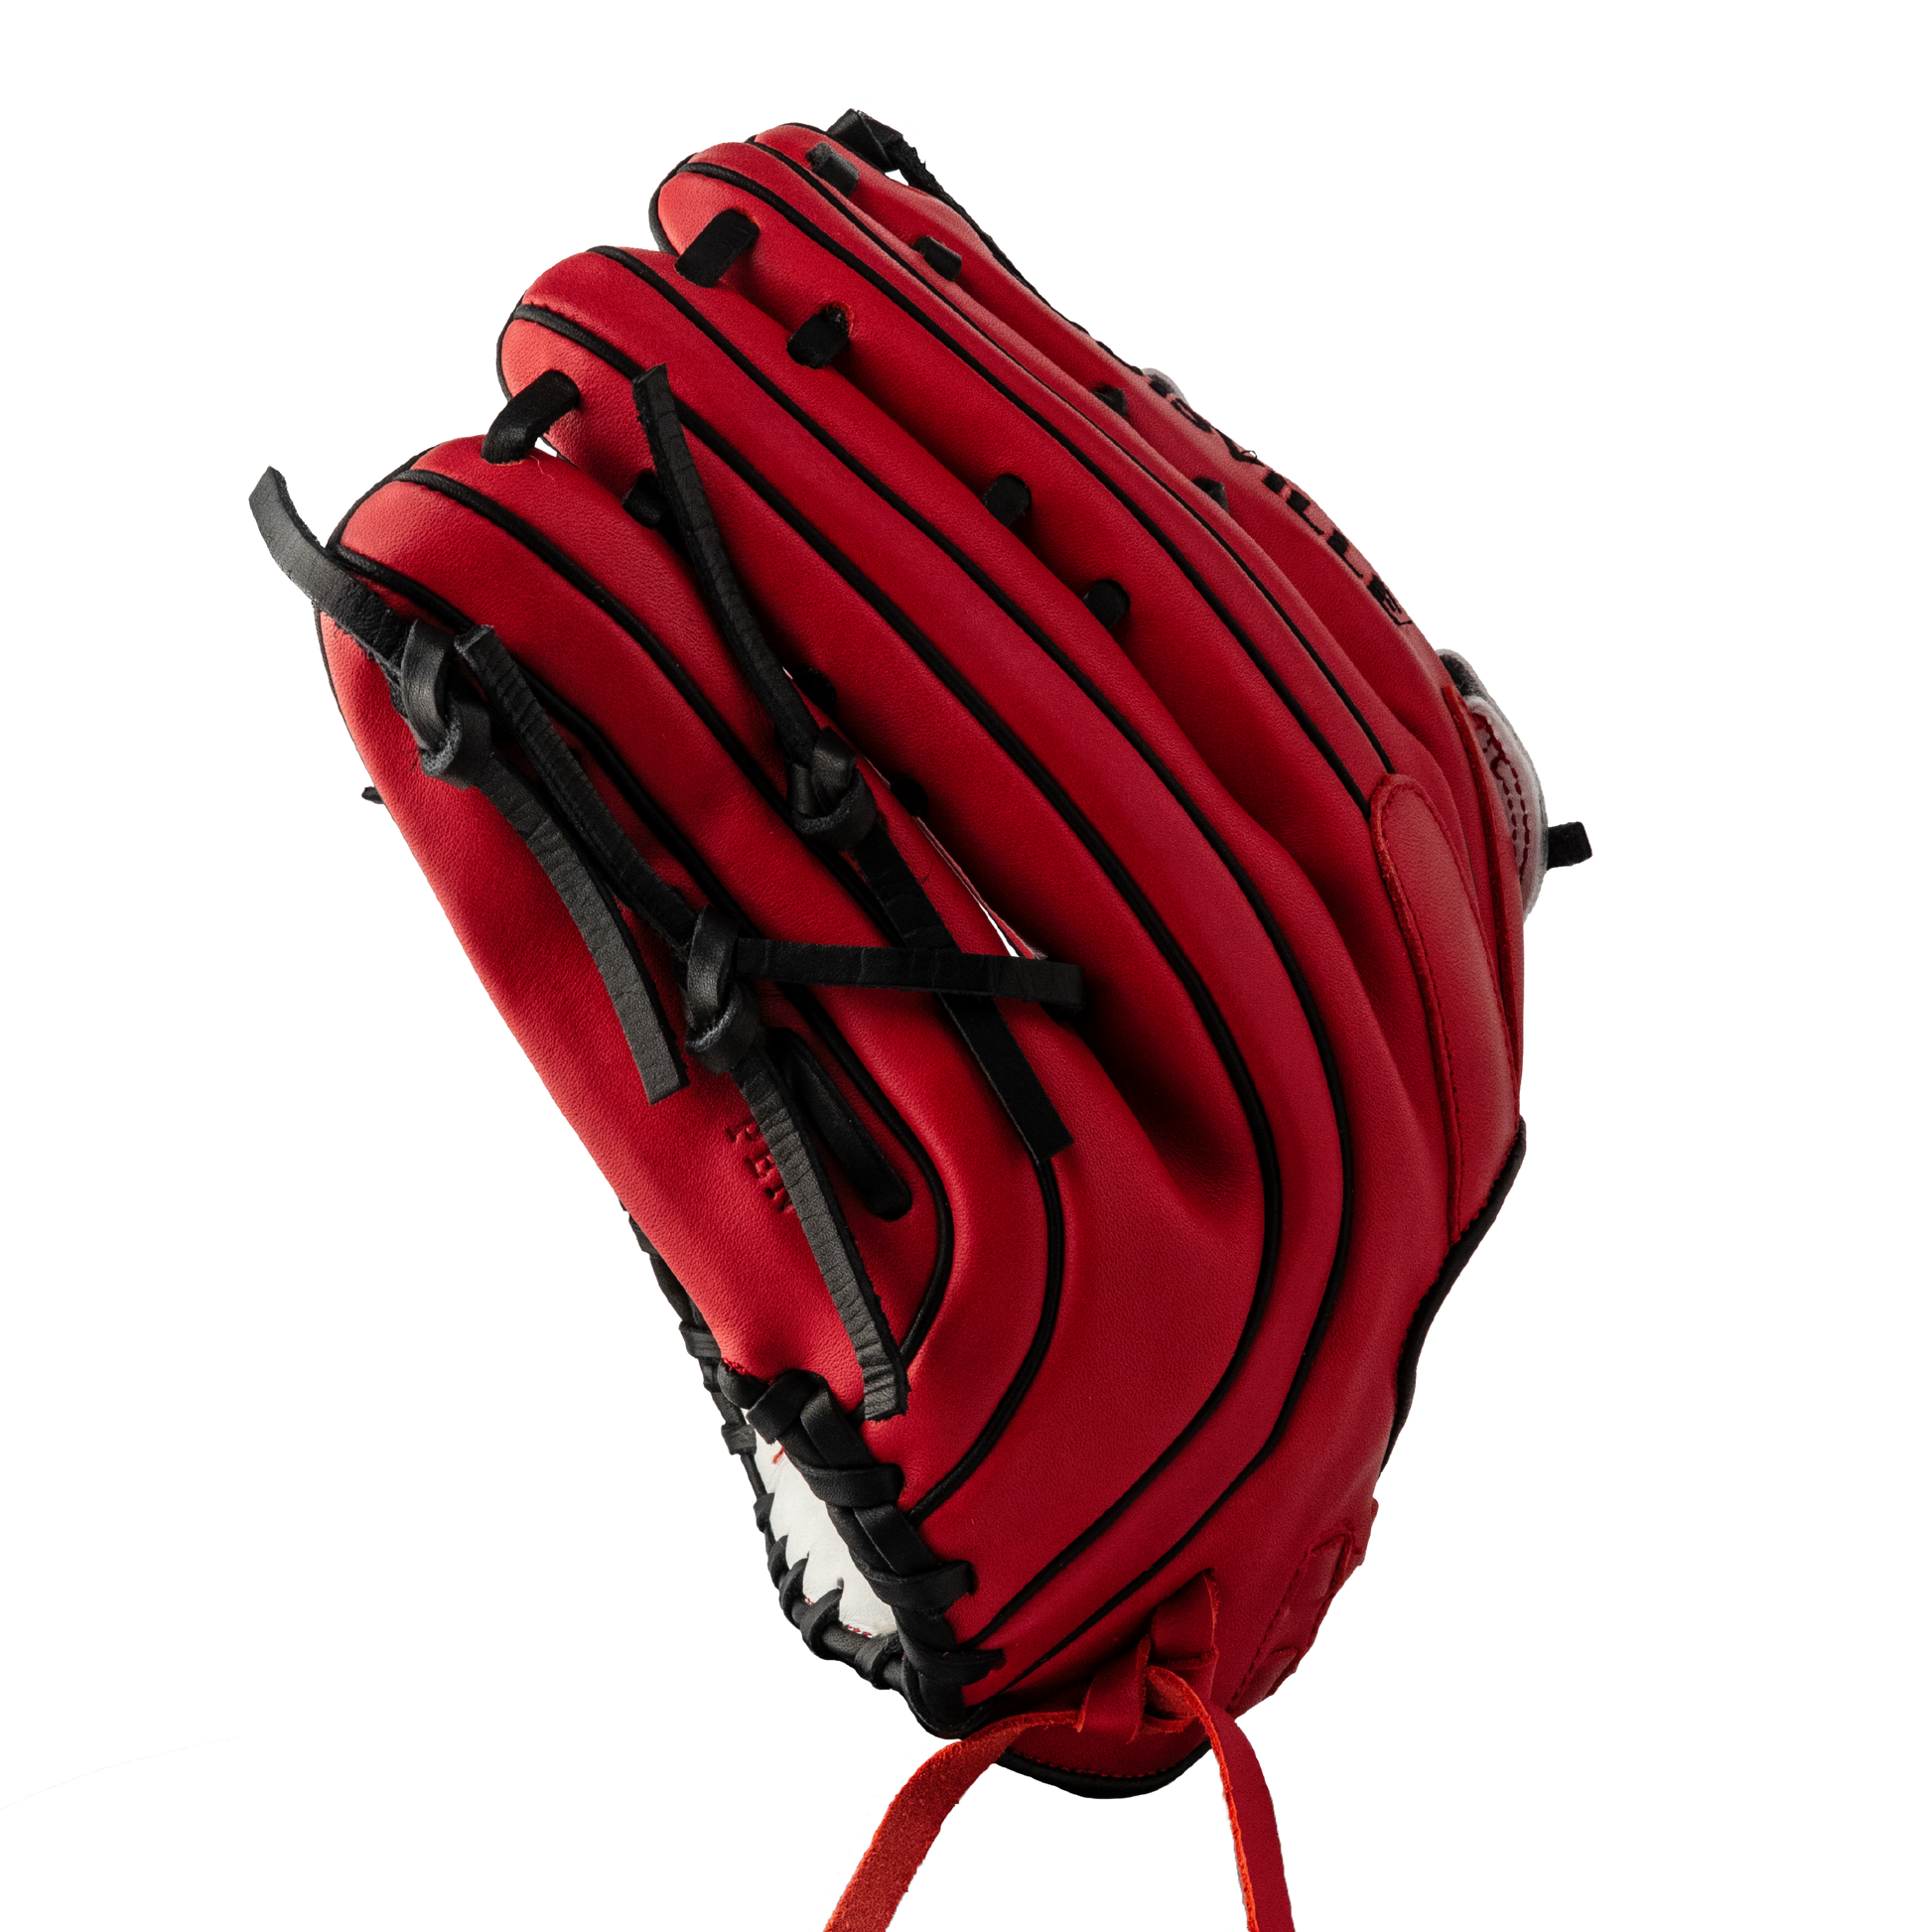 Super Z Slowpitch Fielding Glove 24 - White - Red (8255257706735)